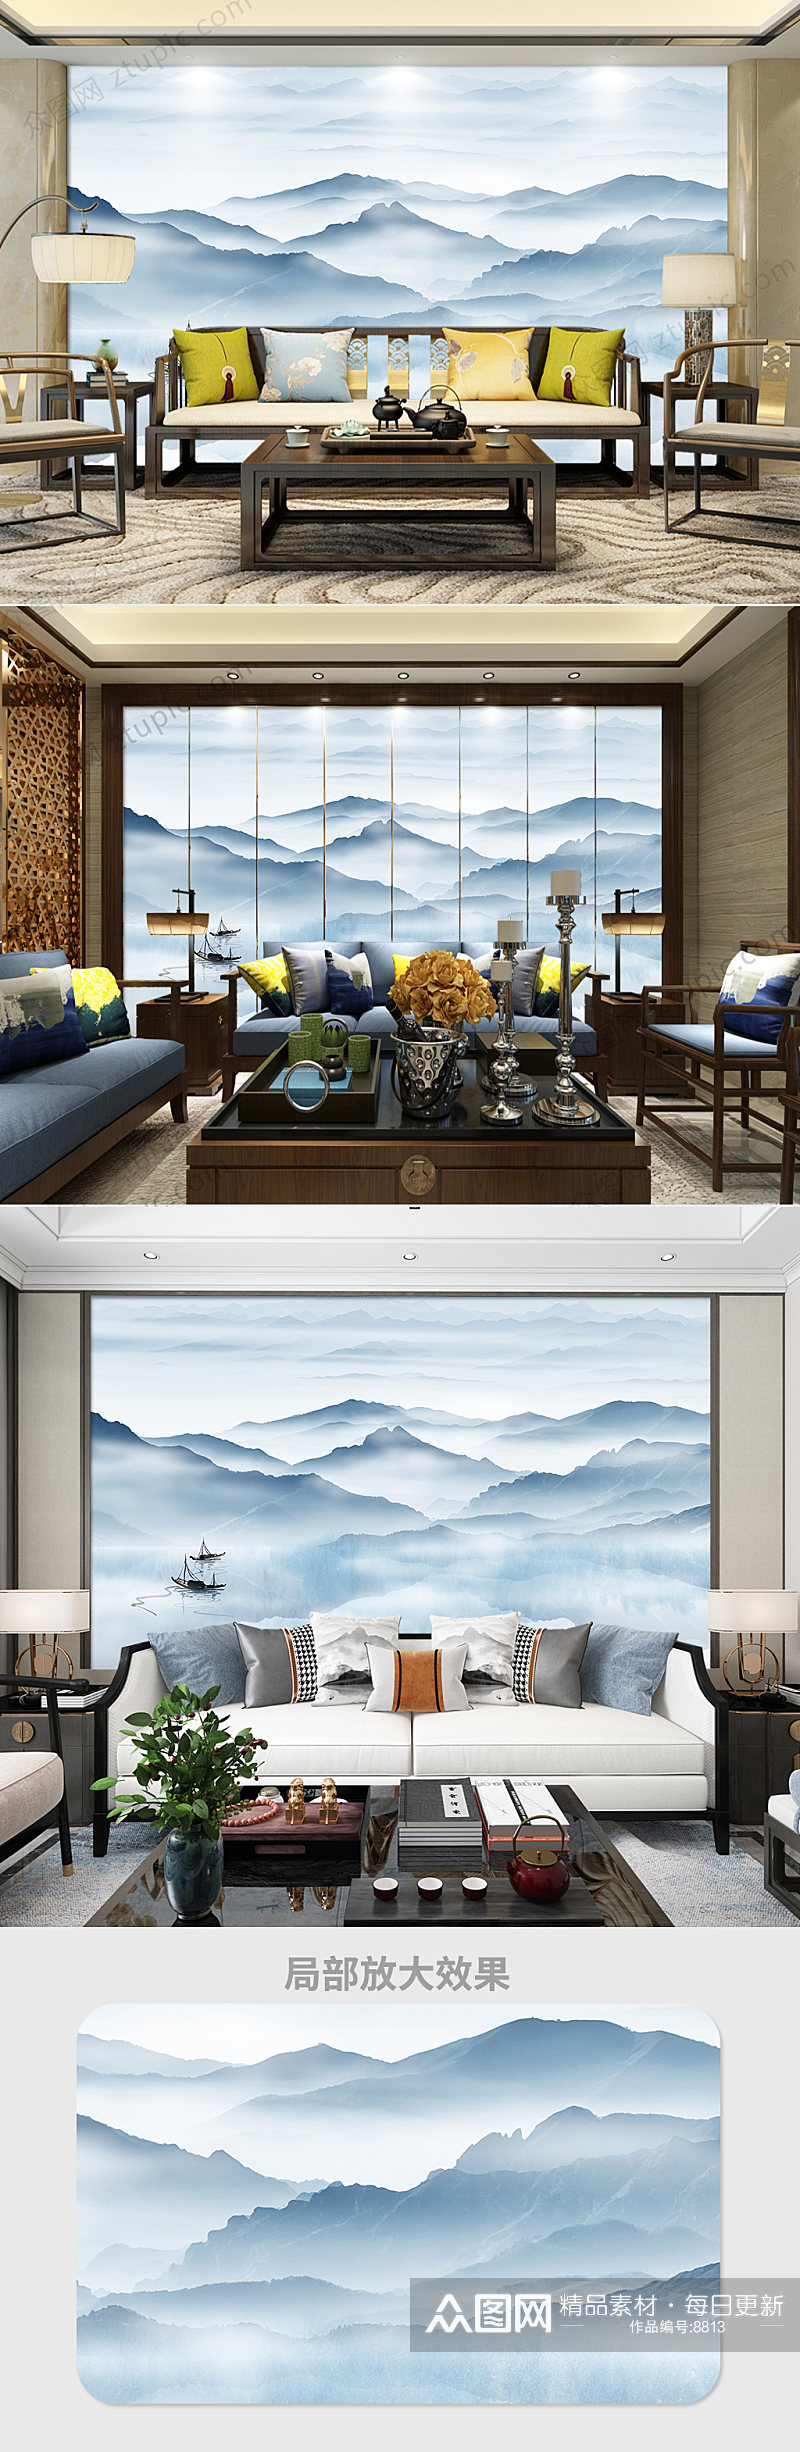 高档山水画新中式古典水墨山水电视背景墙素材